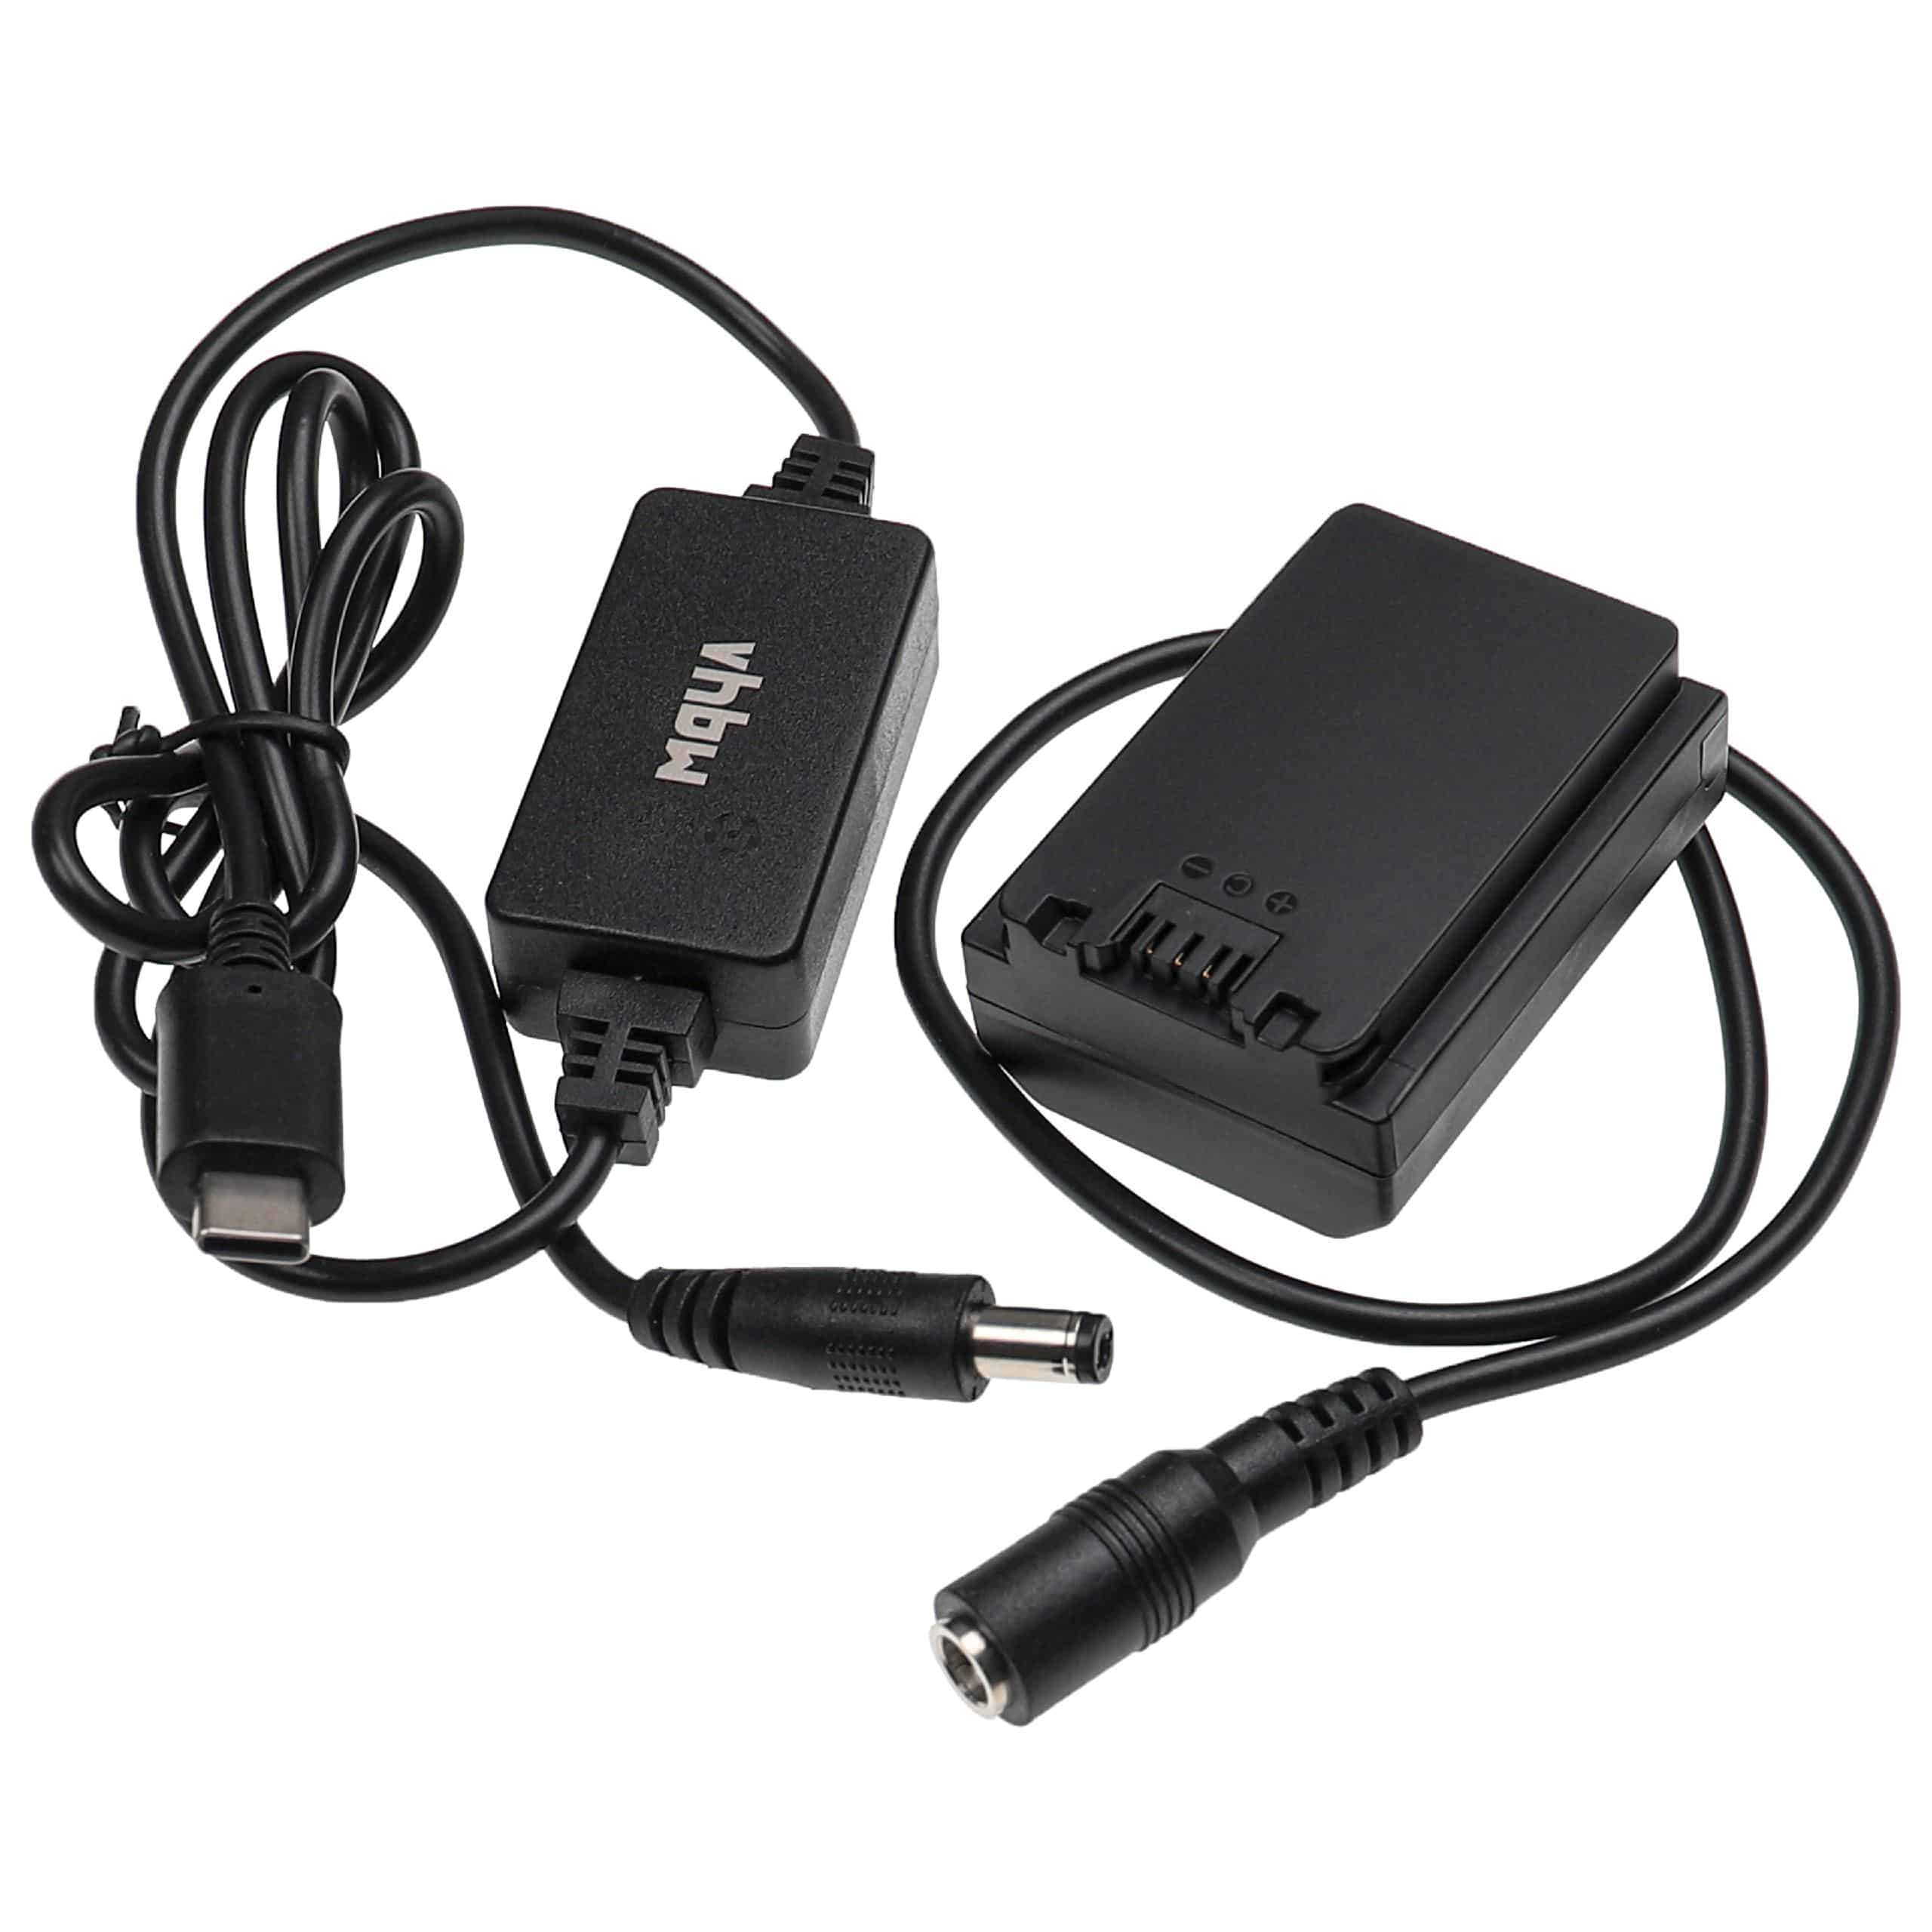 USB Netzteil als Ersatz für Sony AC-FZ100 für Kamera + DC Kuppler ersetzt Sony NP-FZ100